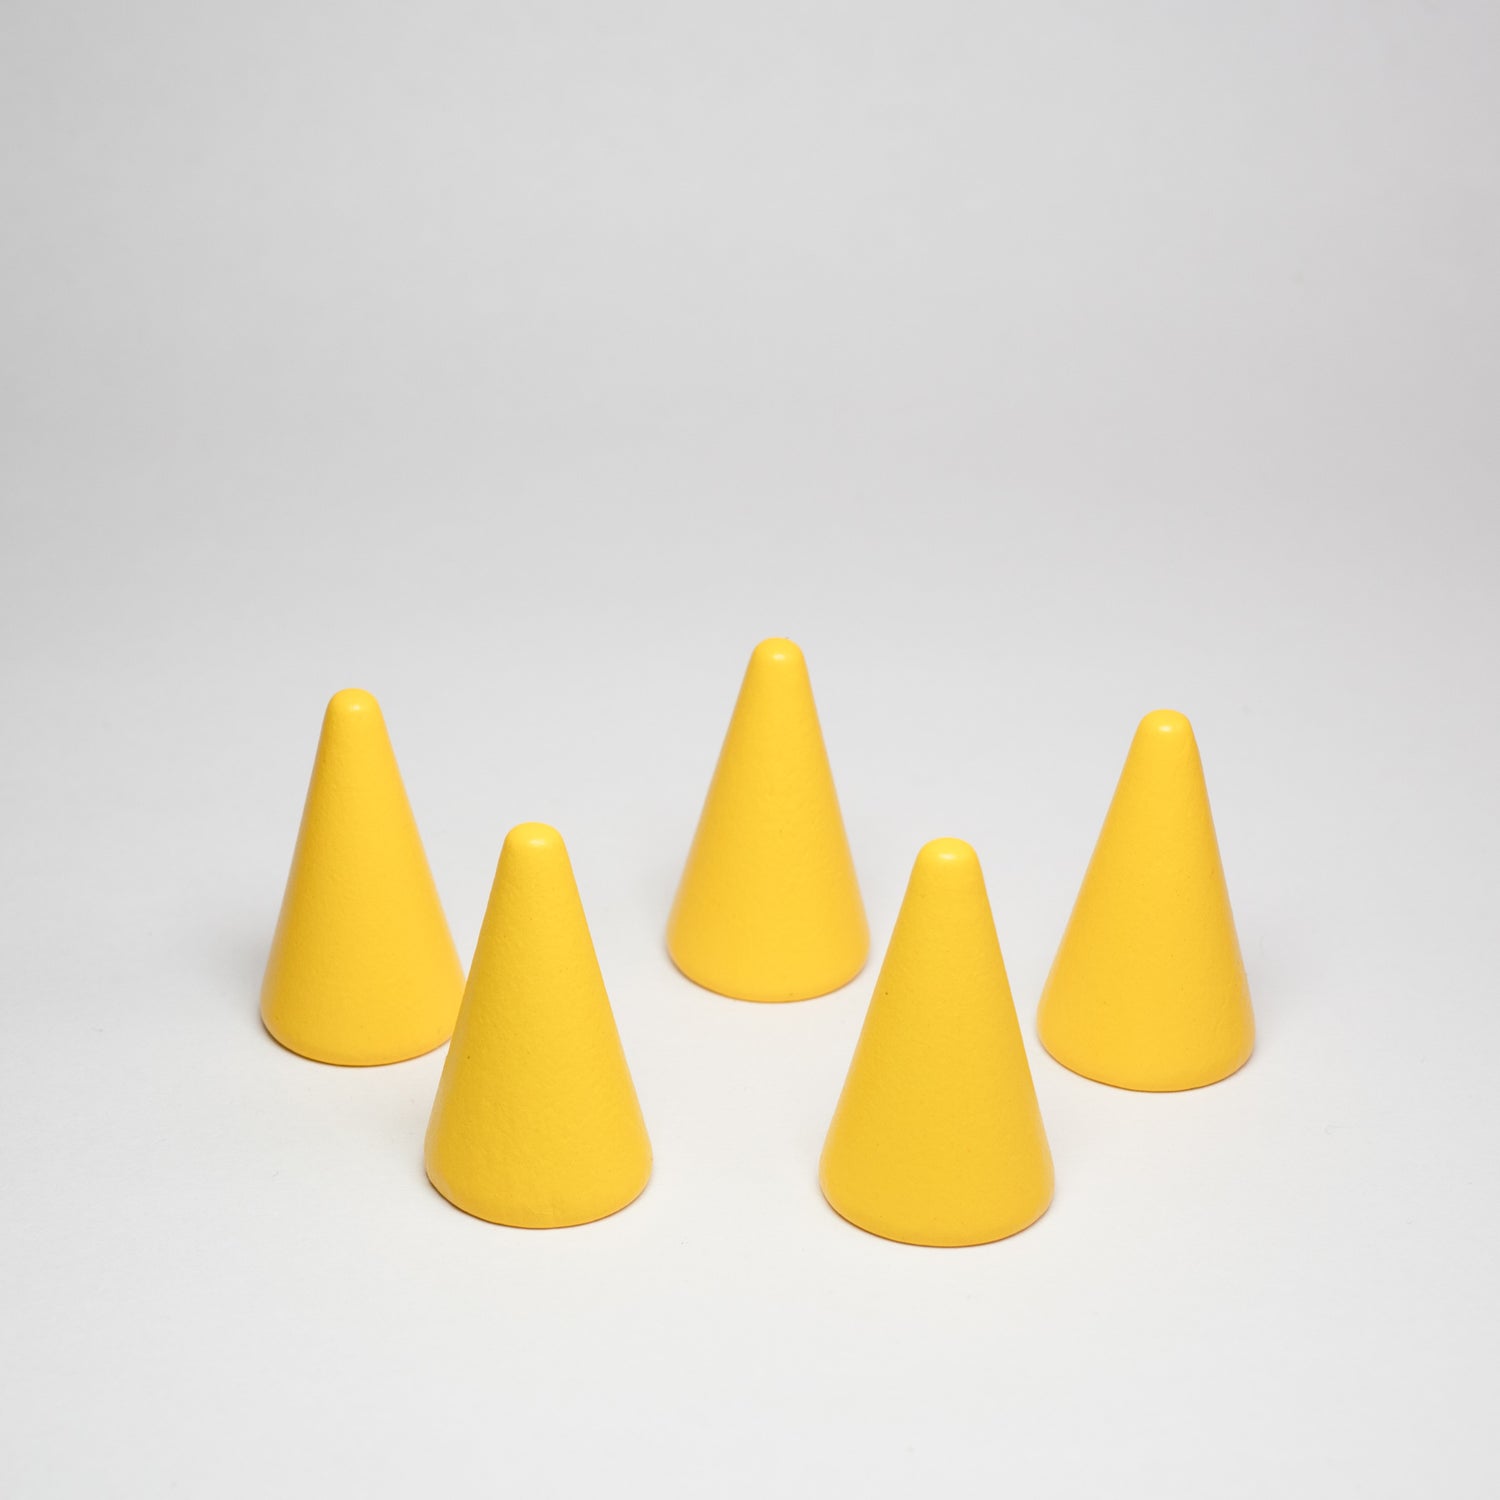 Wooden Cones